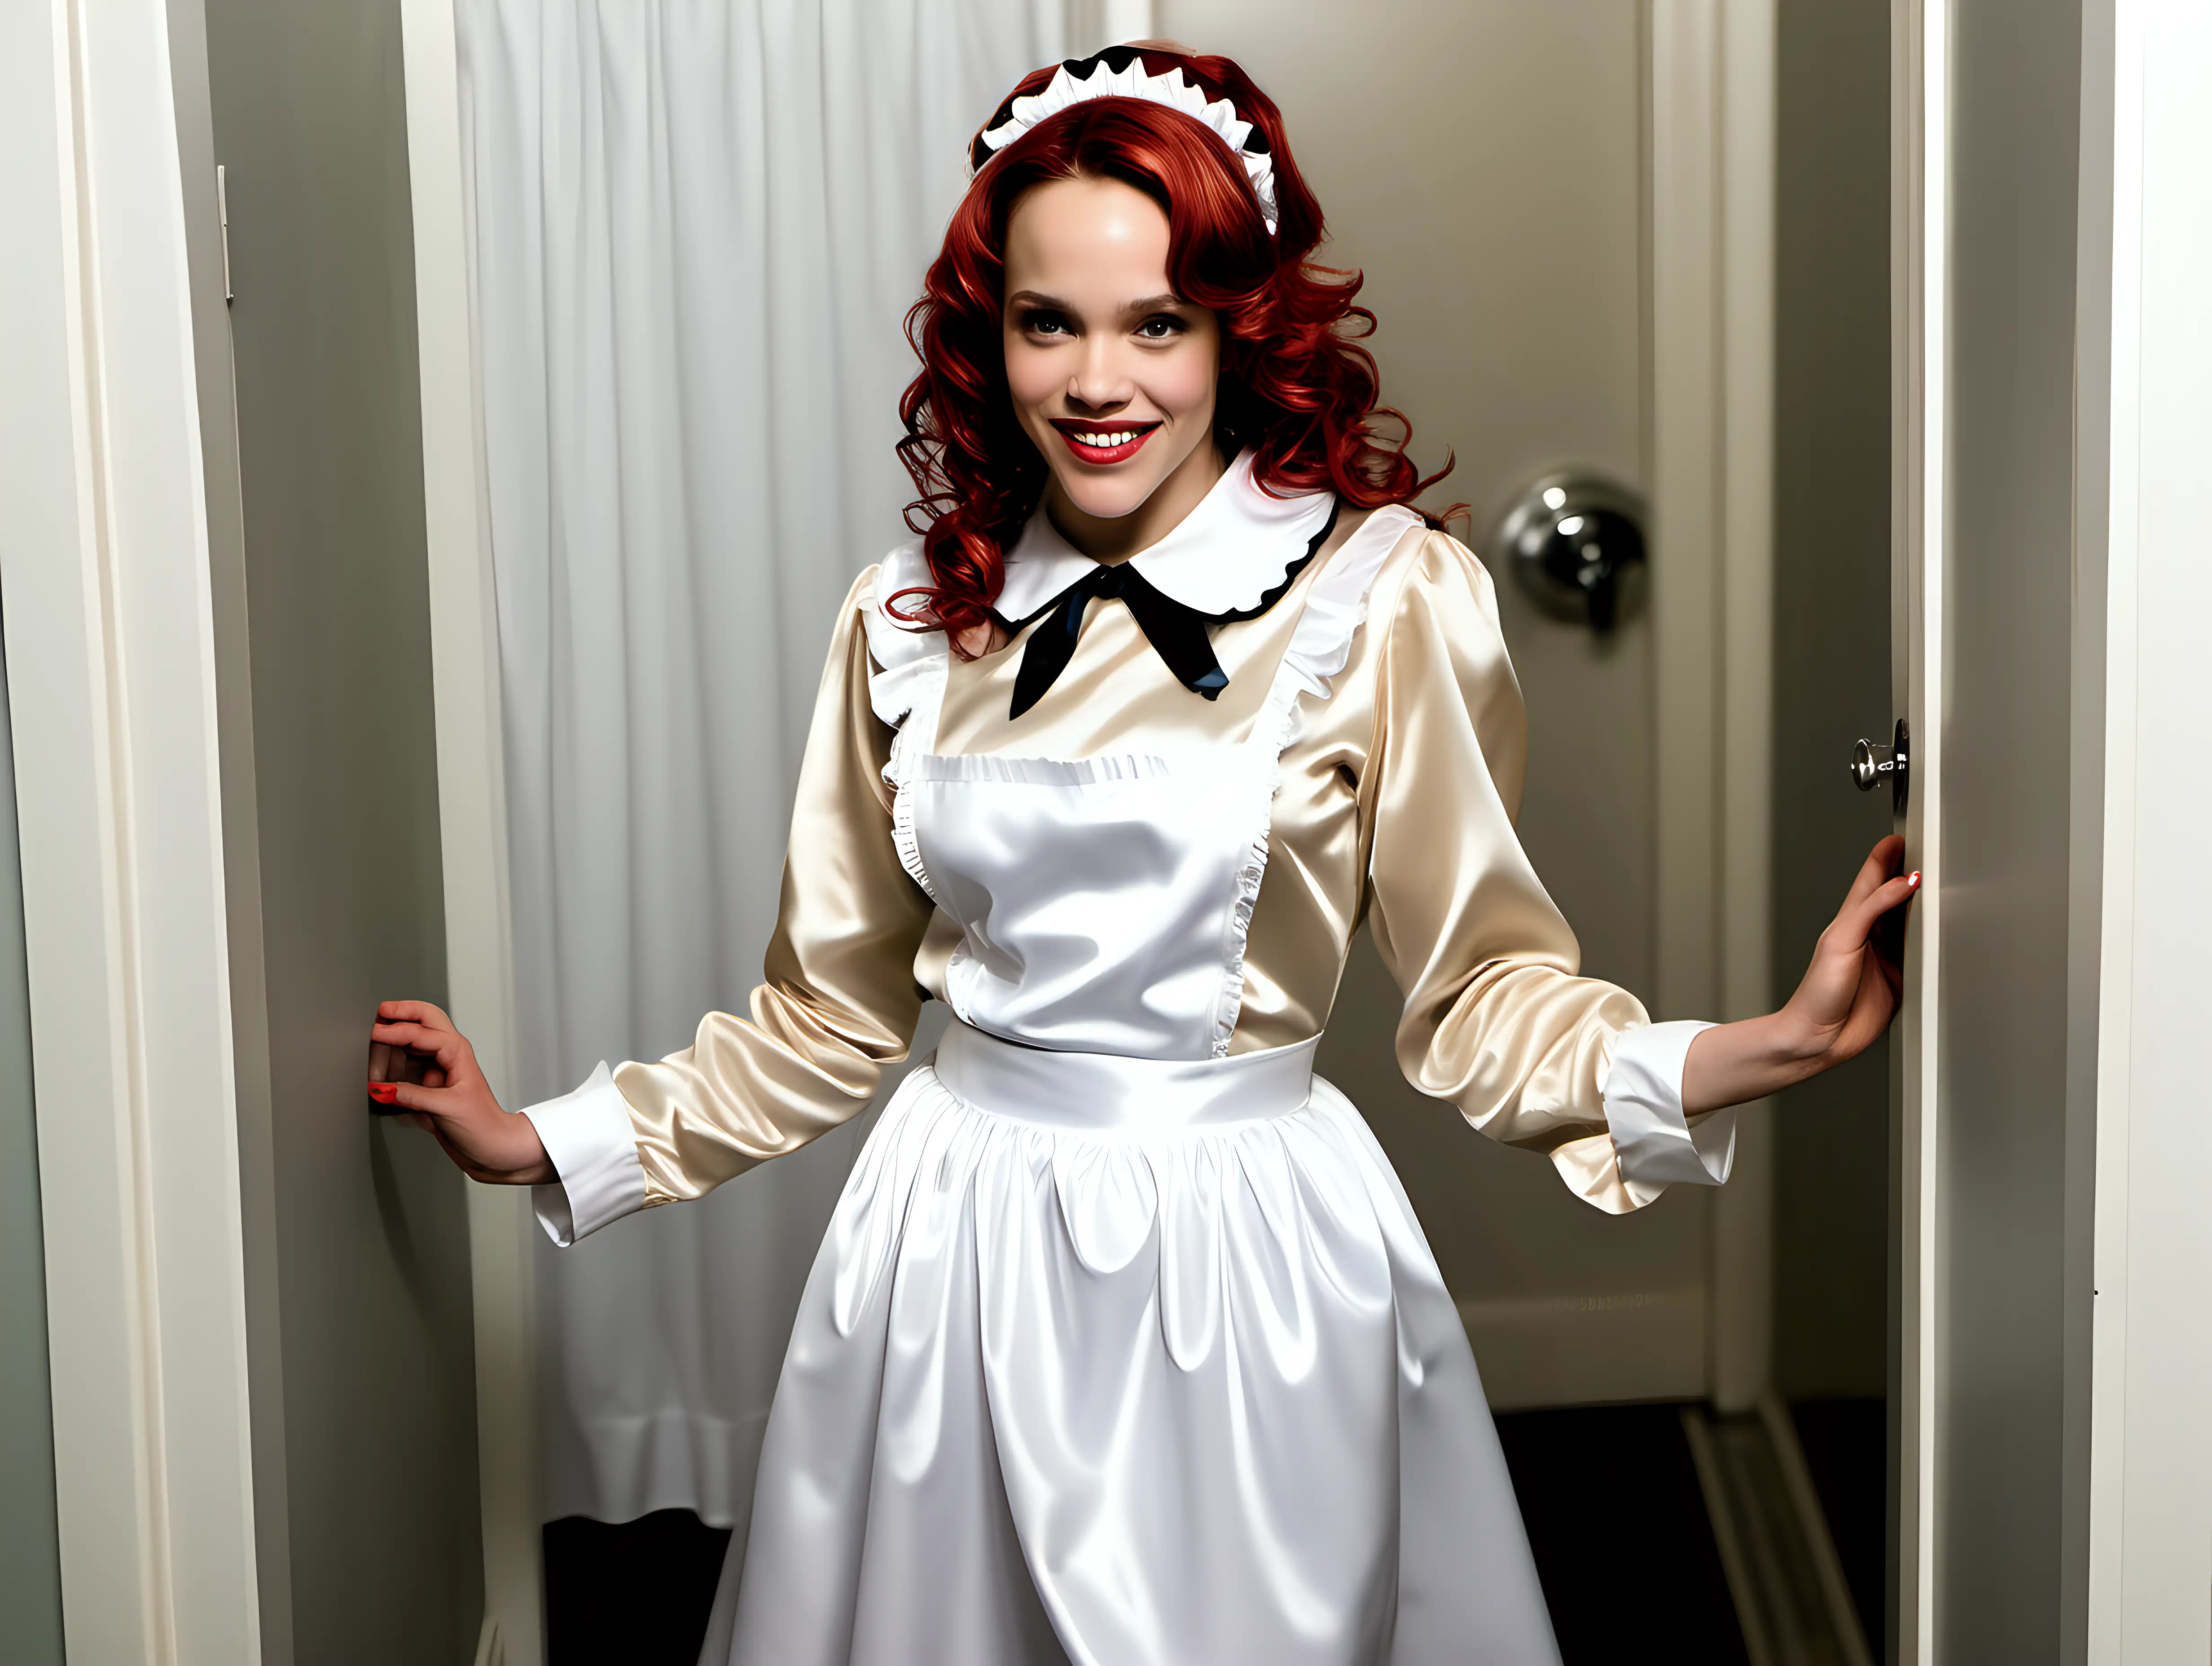 Elegant Retro Maid Gowns Stylish Gathering in a Clean Bathroom